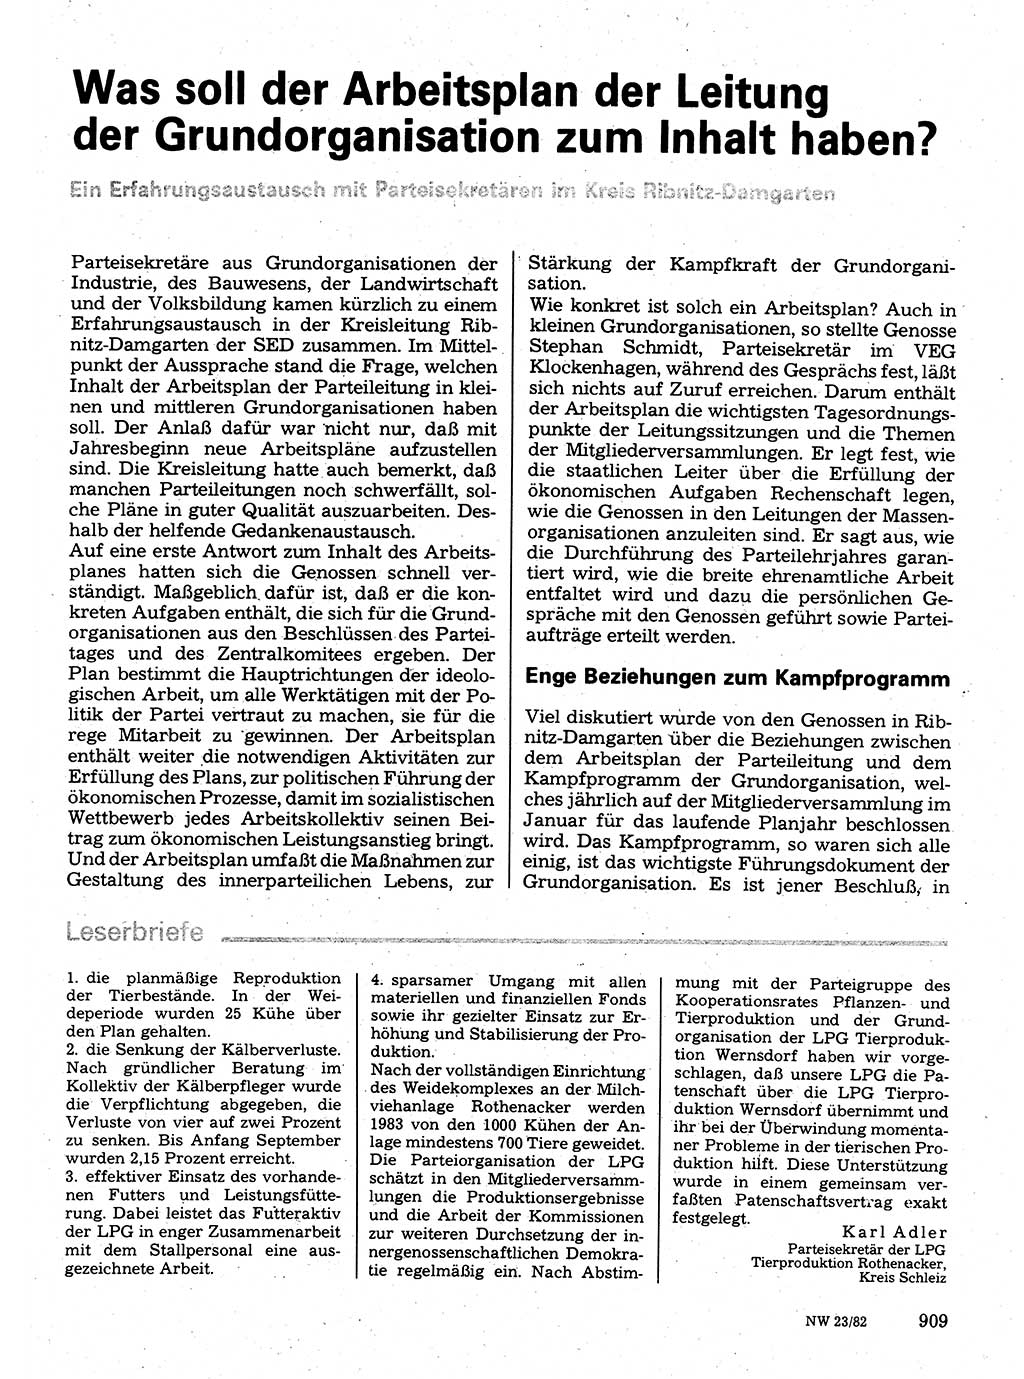 Neuer Weg (NW), Organ des Zentralkomitees (ZK) der SED (Sozialistische Einheitspartei Deutschlands) für Fragen des Parteilebens, 37. Jahrgang [Deutsche Demokratische Republik (DDR)] 1982, Seite 909 (NW ZK SED DDR 1982, S. 909)